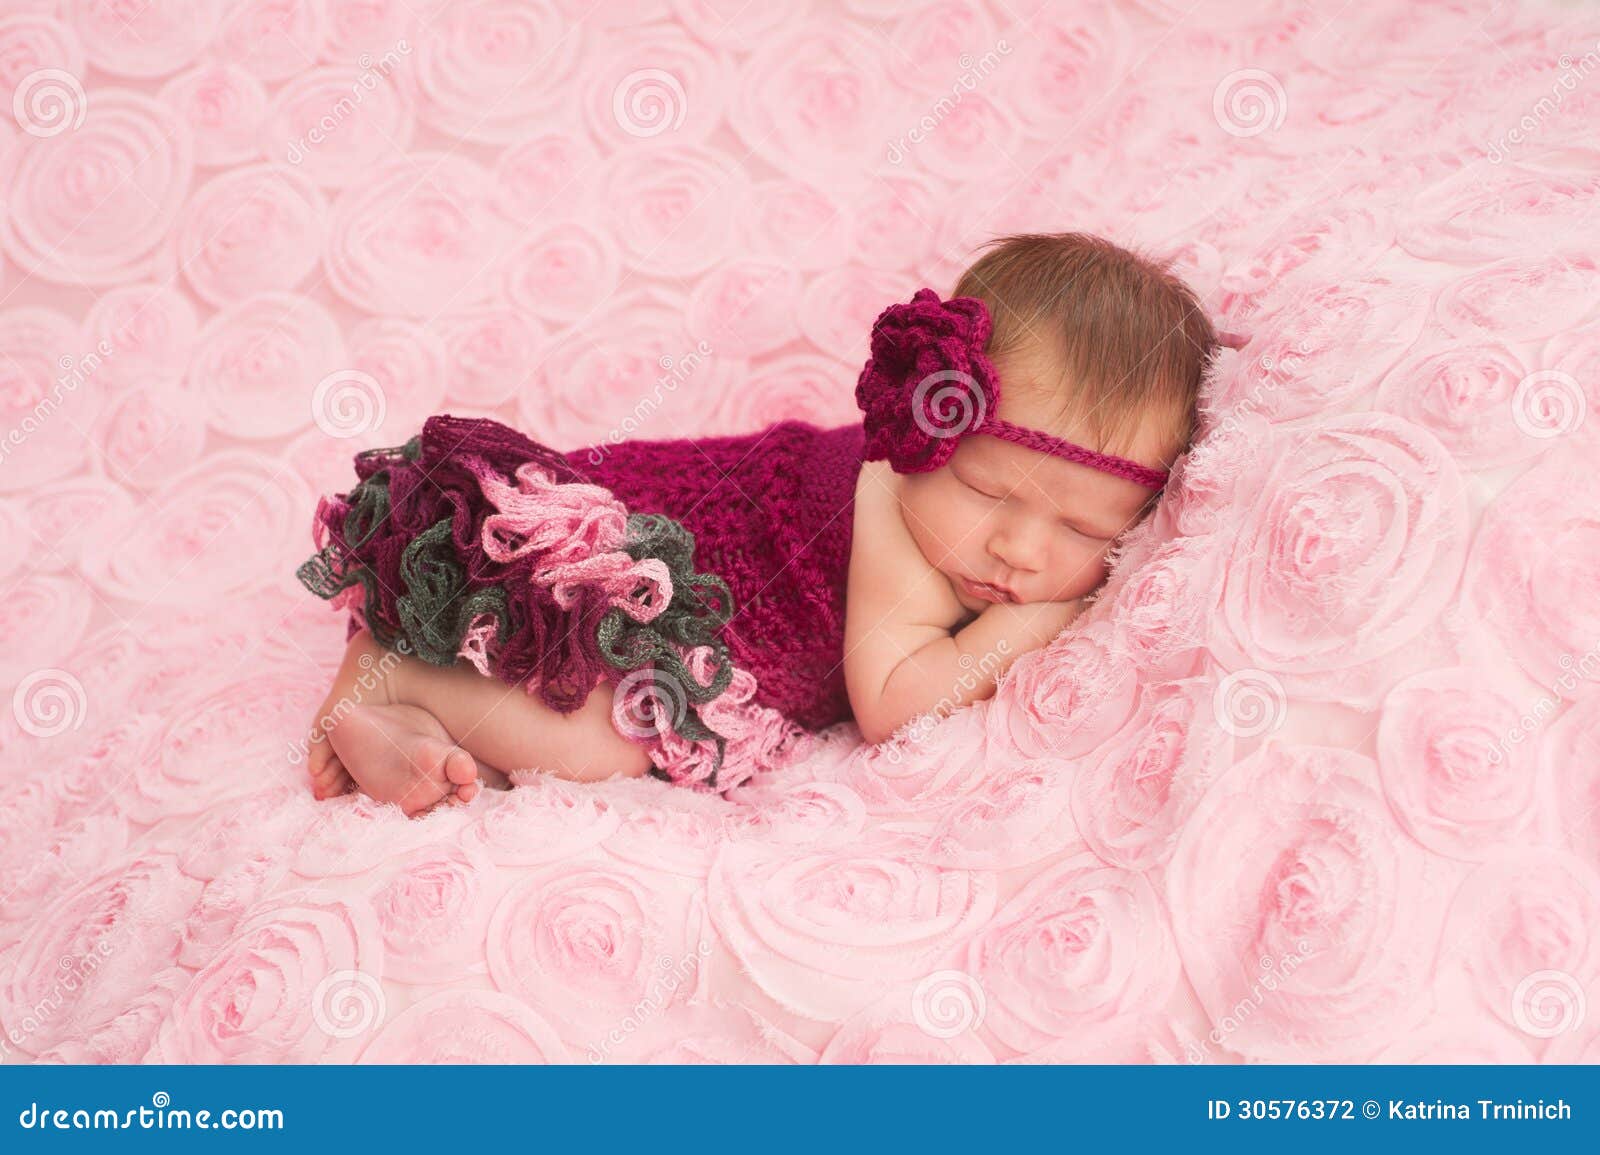 Recién Nacido Que Lleva Un Mameluco Hecho a Ganchillo Foto de archivo - Imagen de humano, rosa: 30576372